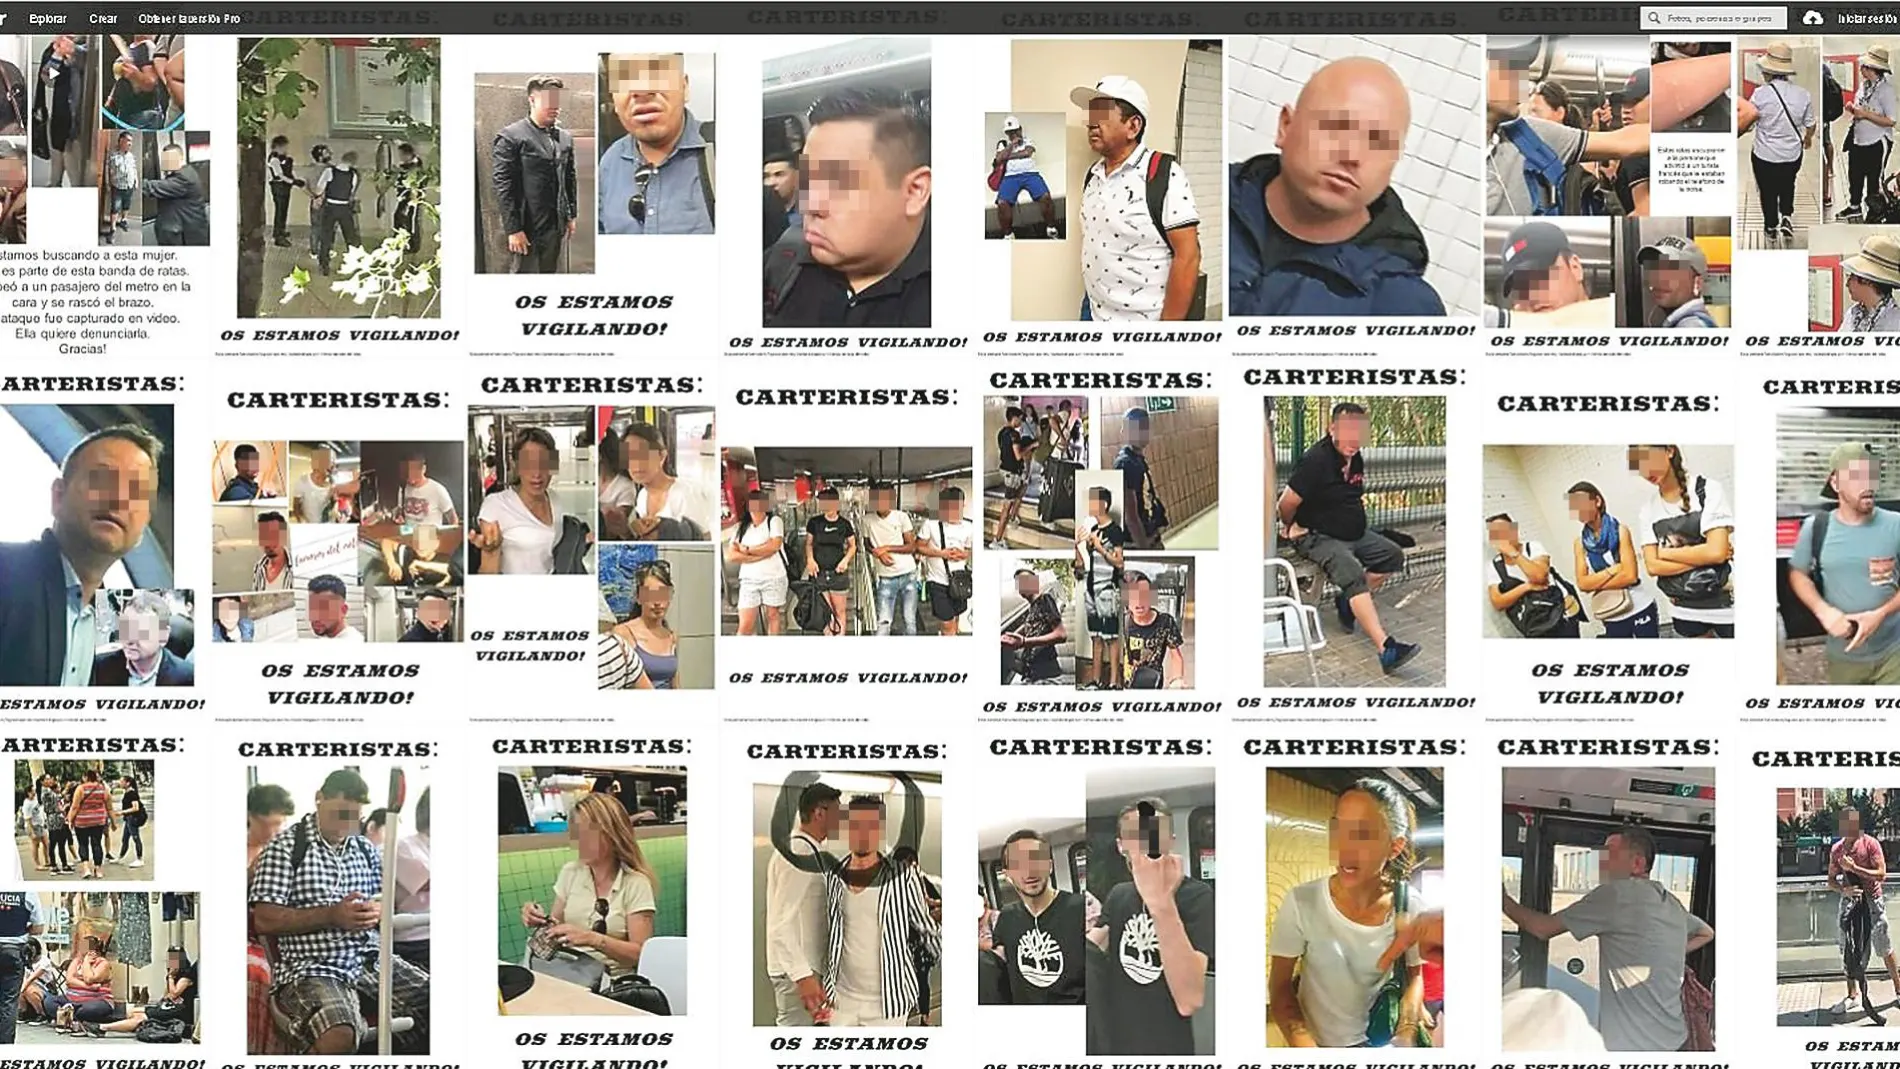 Presuntos delincuentes, viejos conocidos de los viajeros del Metro de Barcelona, y cuyas imágenes han sido desveladas por grupos de ciudadanos cansados de la inseguridad